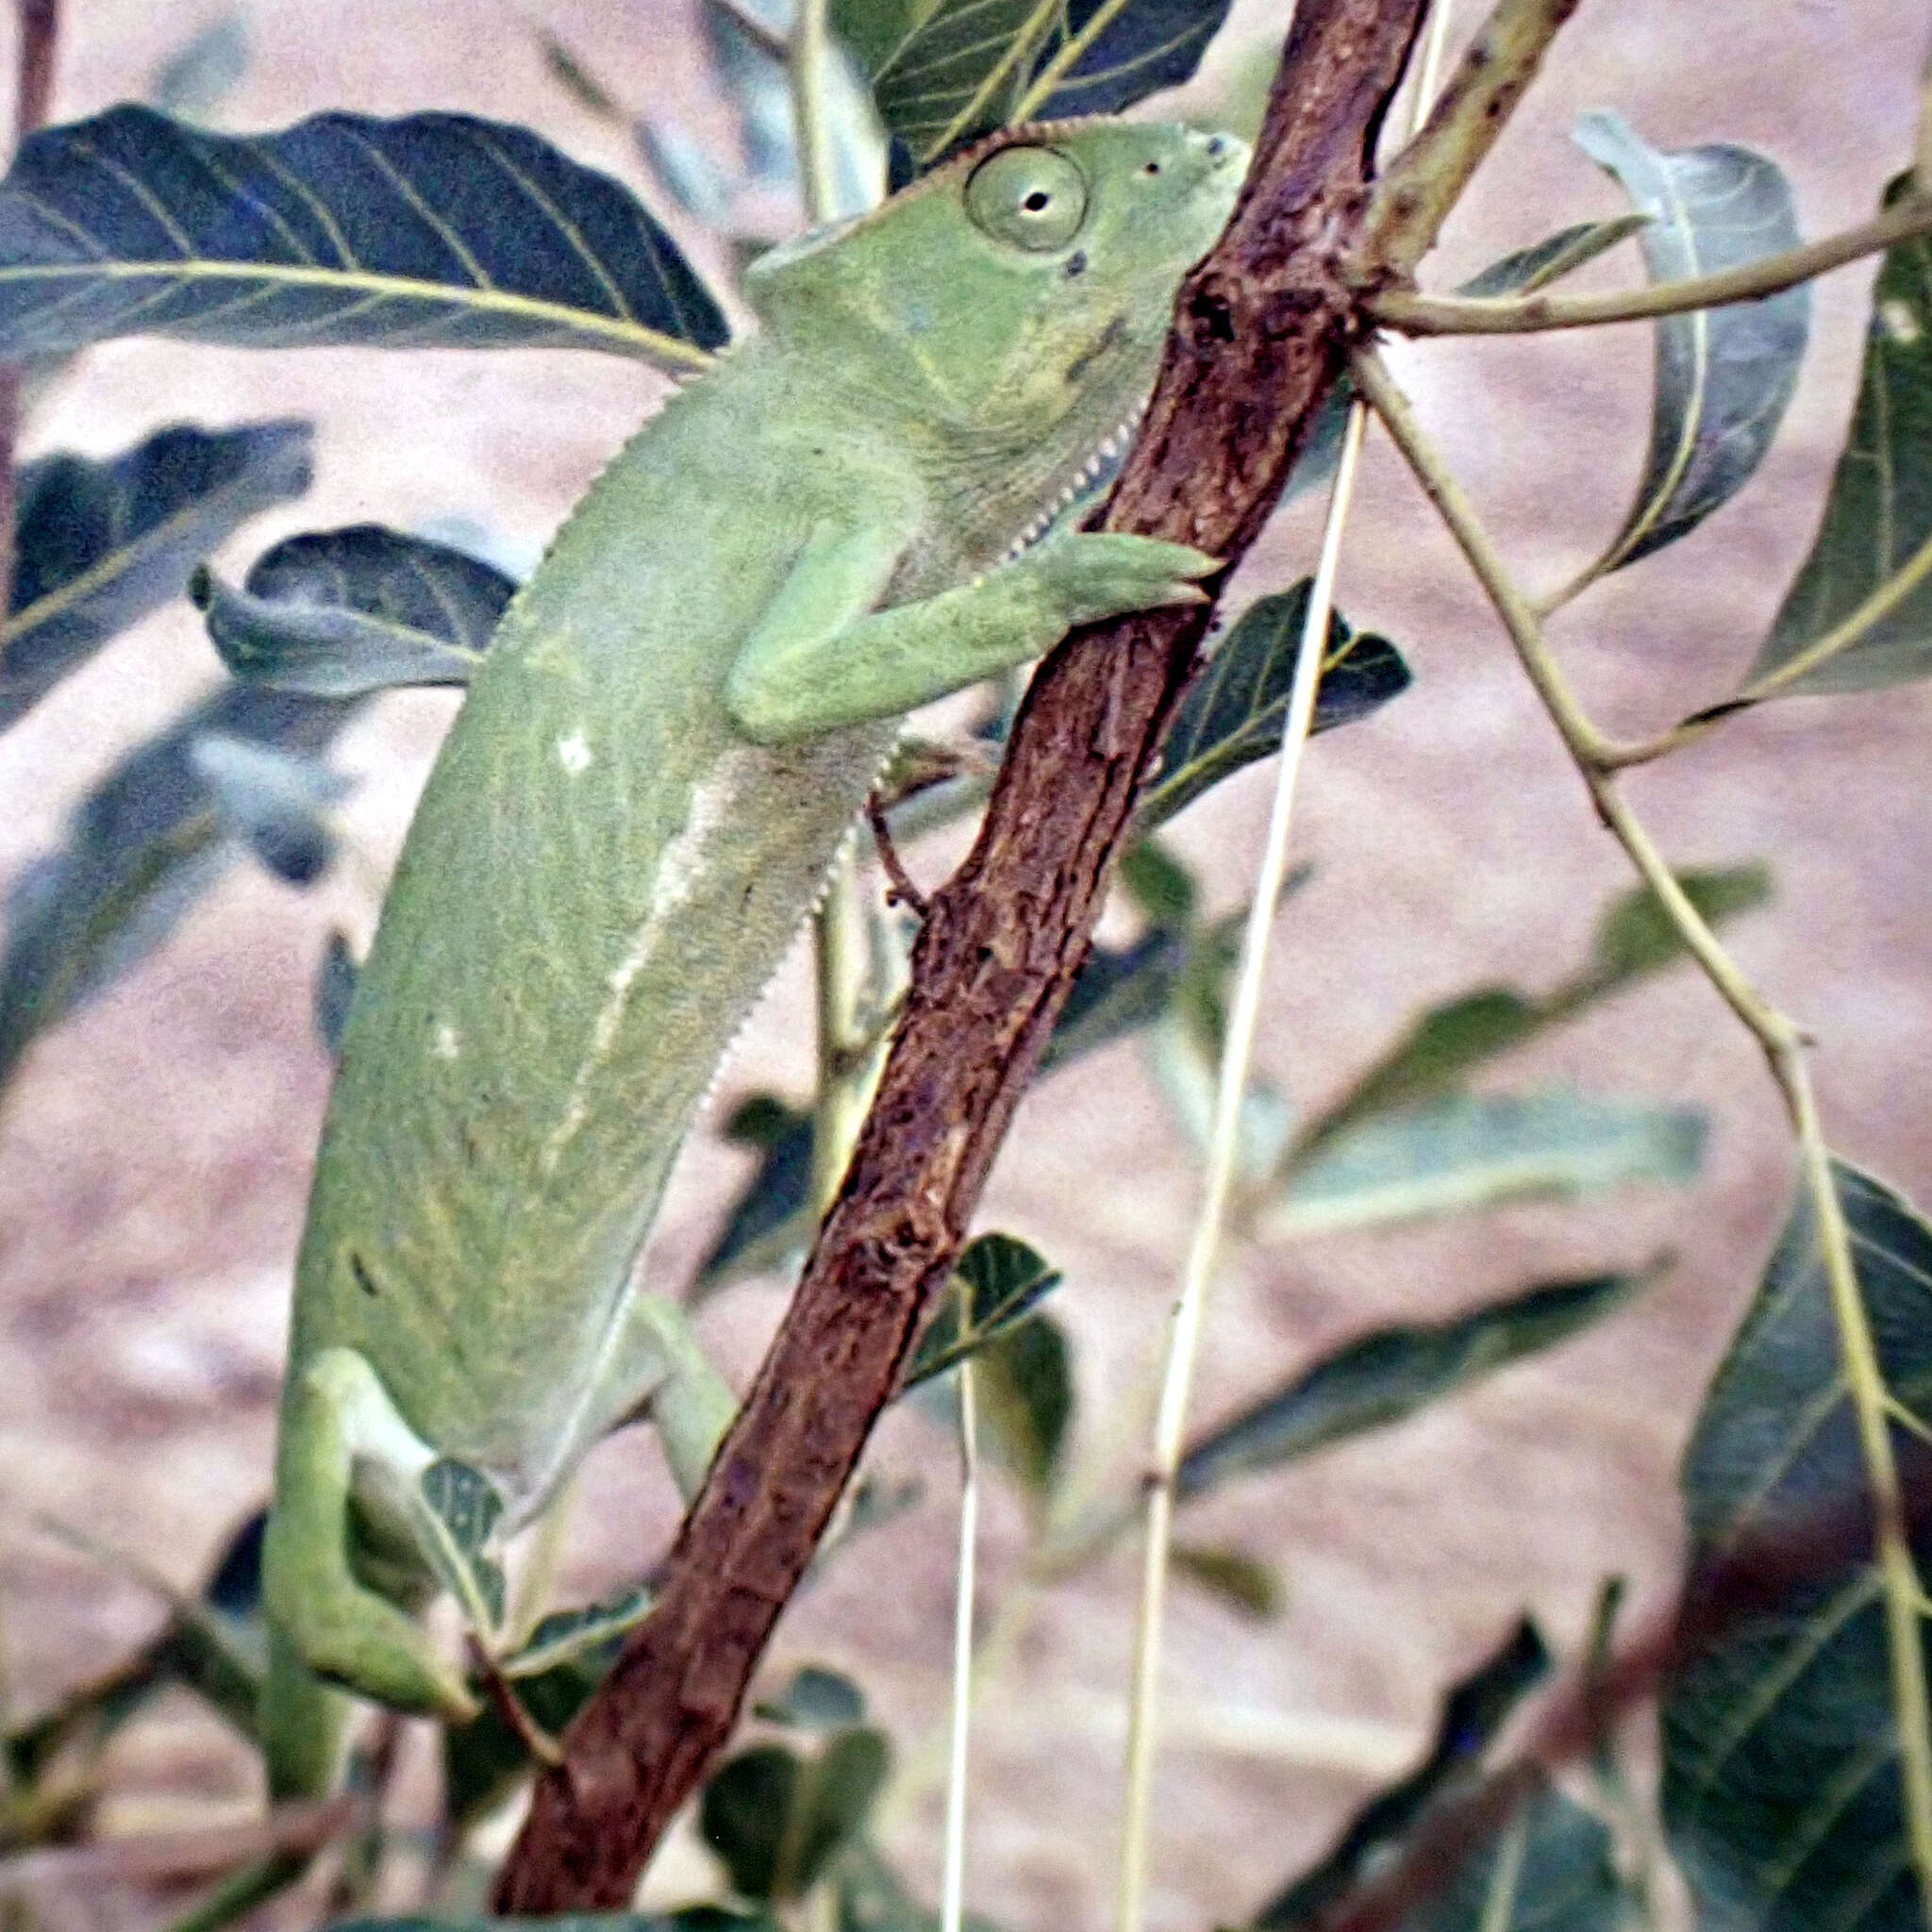 Image of Senegal Chameleon